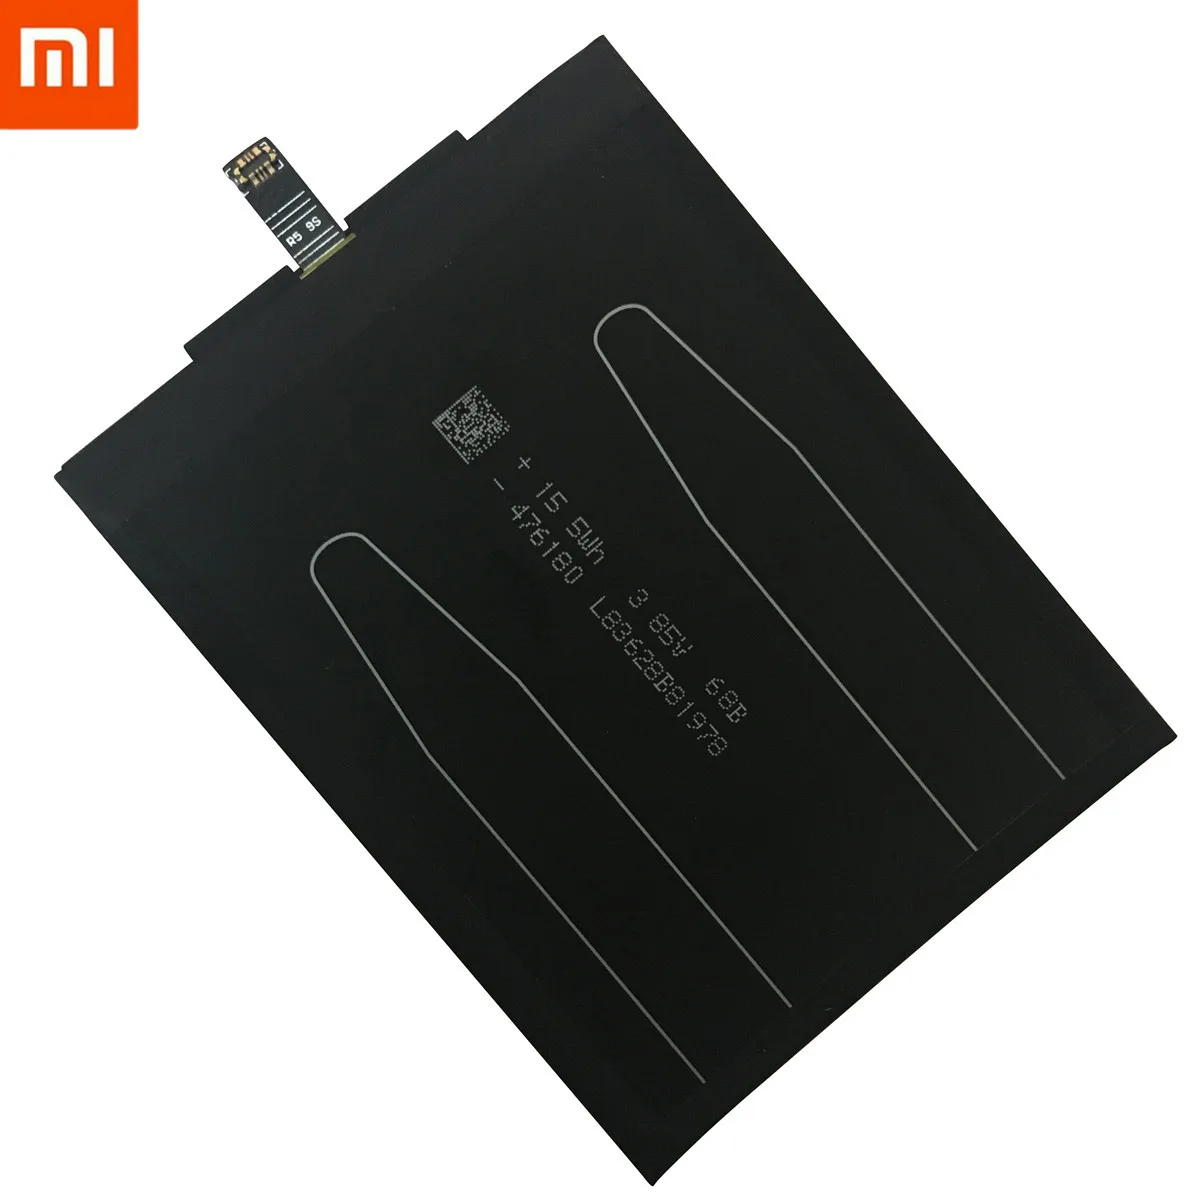 Аккумулятор для телефона Xiao mi BM47, высокое качество, емкость 4000 мАч, запасная батарея для Red mi 3 3 S 3X4X3 pro Hong mi 3 S 4 X